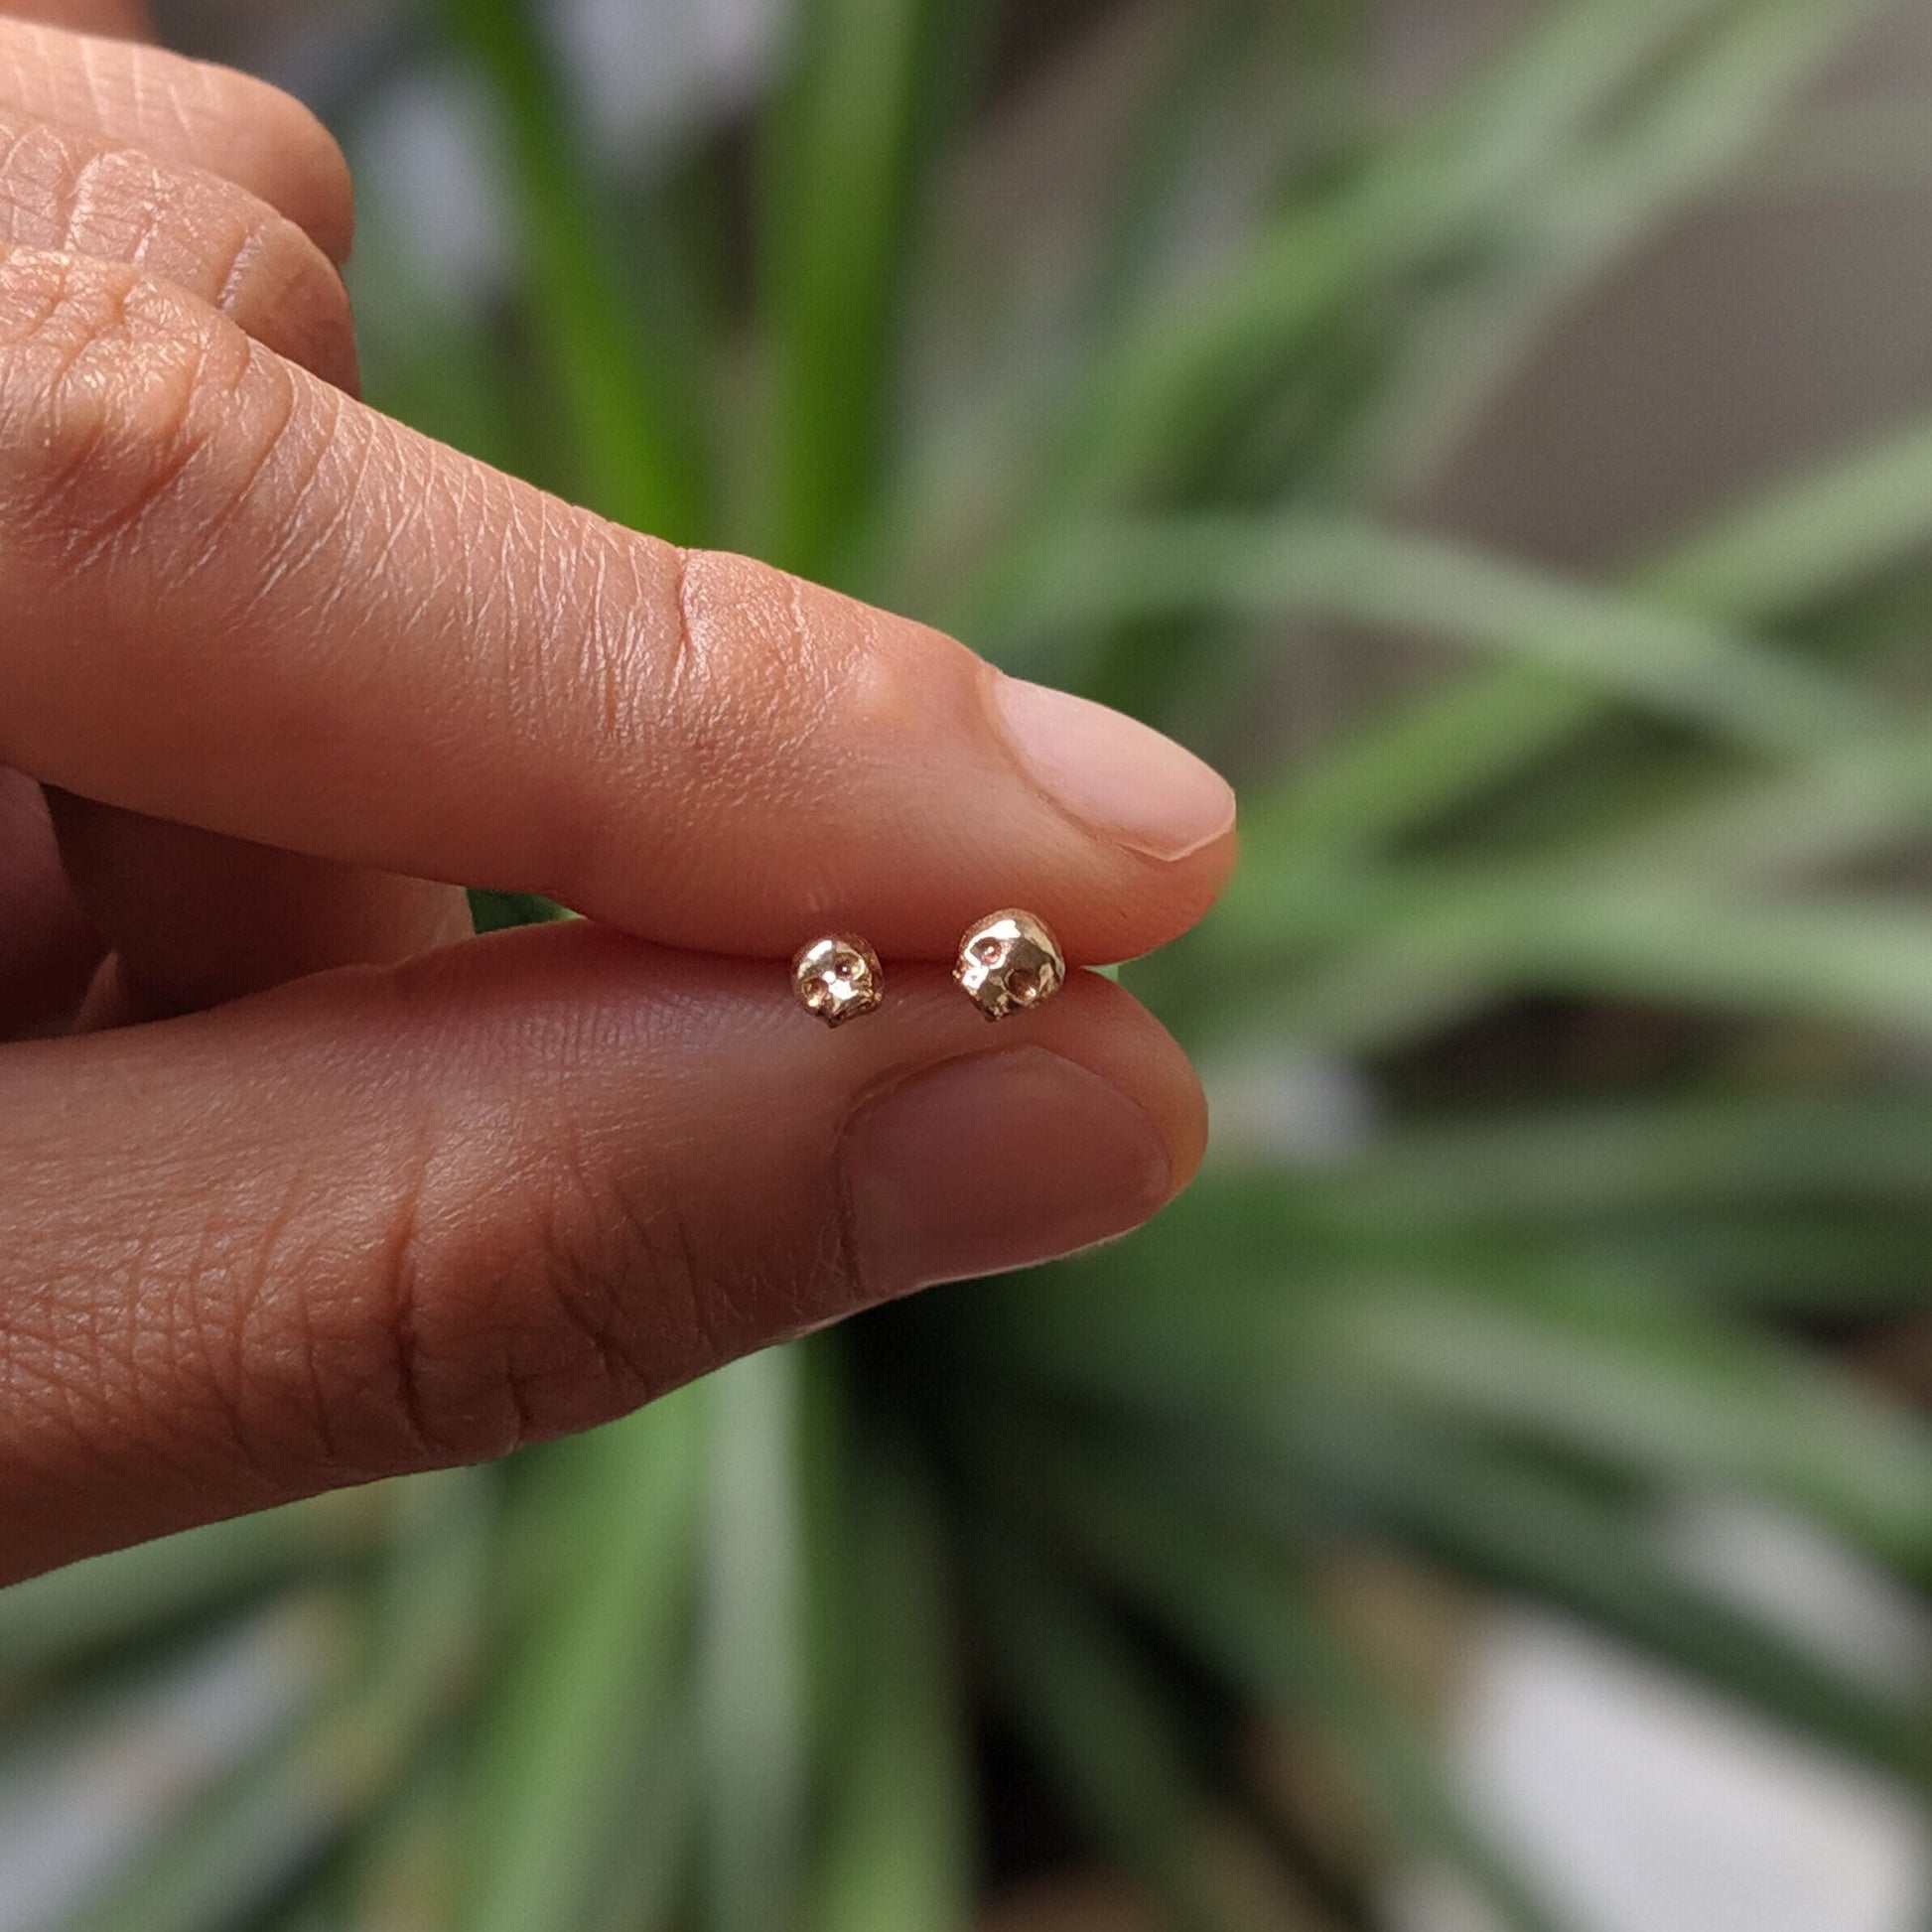 world's tiniest skull earring 14k gold